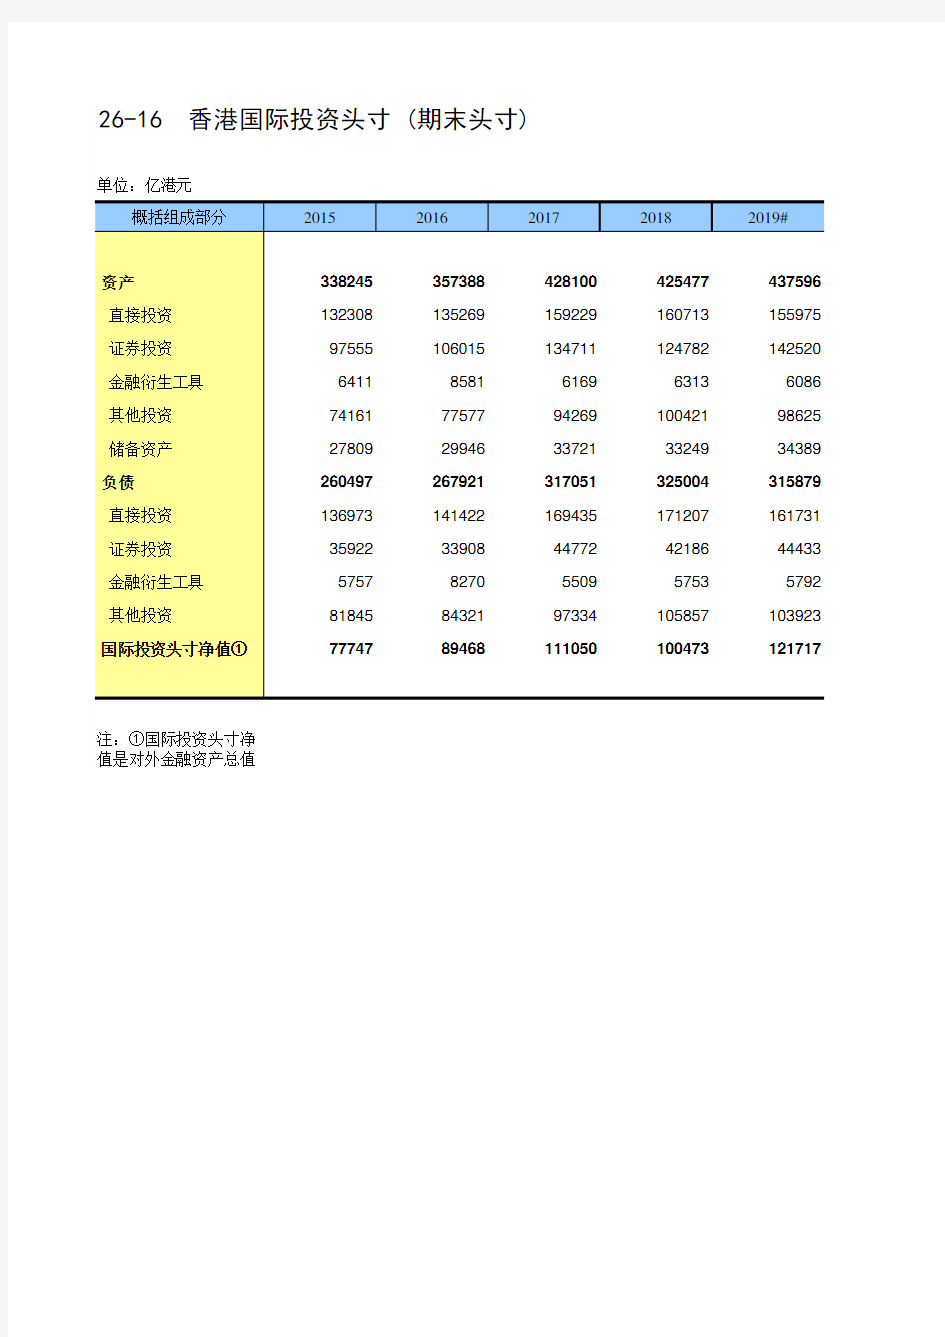 中国统计年鉴2020香港特区社会经济发展指标：26-16  香港特区国际投资头寸 (期末头寸)